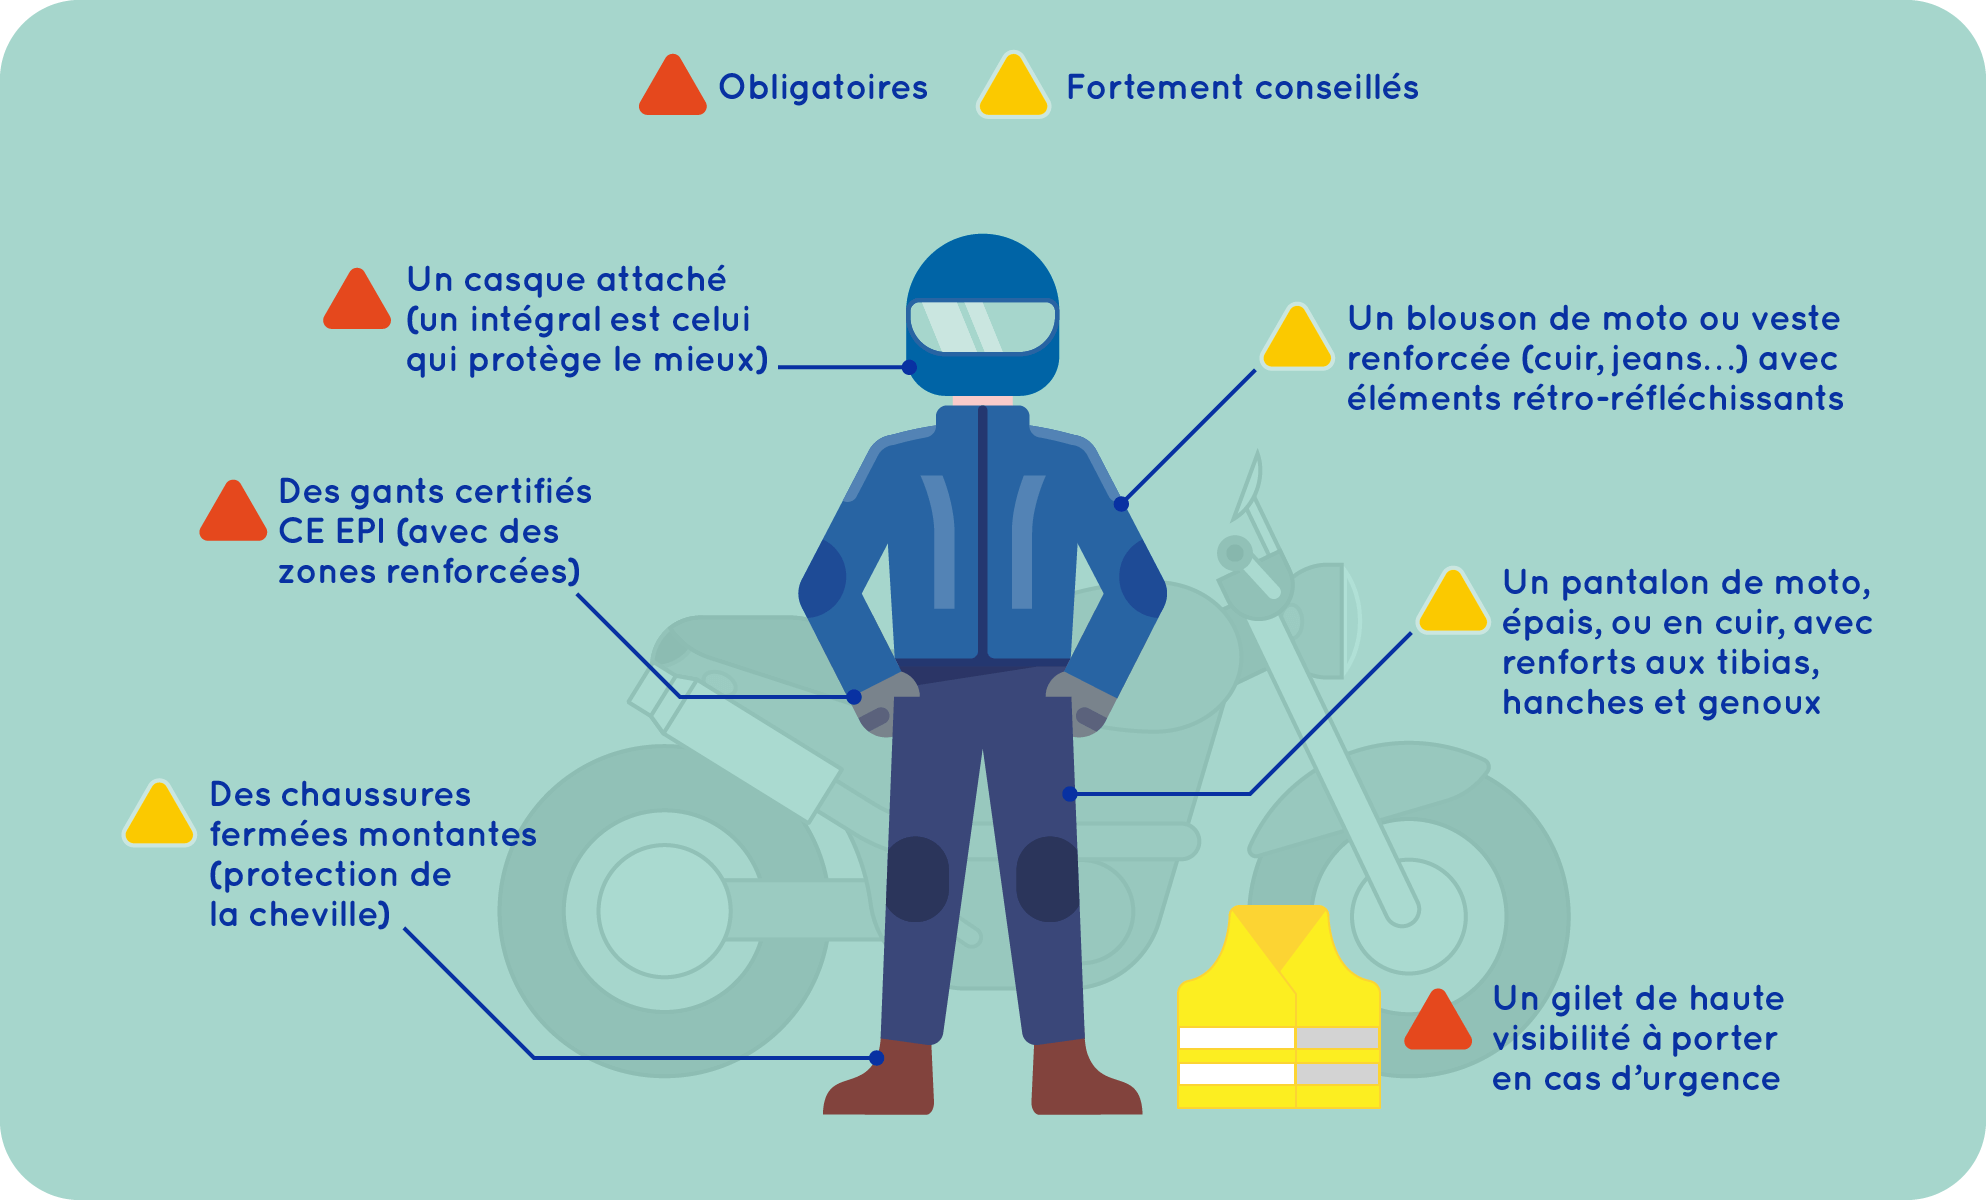 Un casque attaché, des gants certifié CE EPI,  un gilet de haute visibilité à porter en cas d'urgence, des chaussures fermées montantes, un blouson de moto ou une veste renforcée, un pantalon de moto épais, ou en cuir.